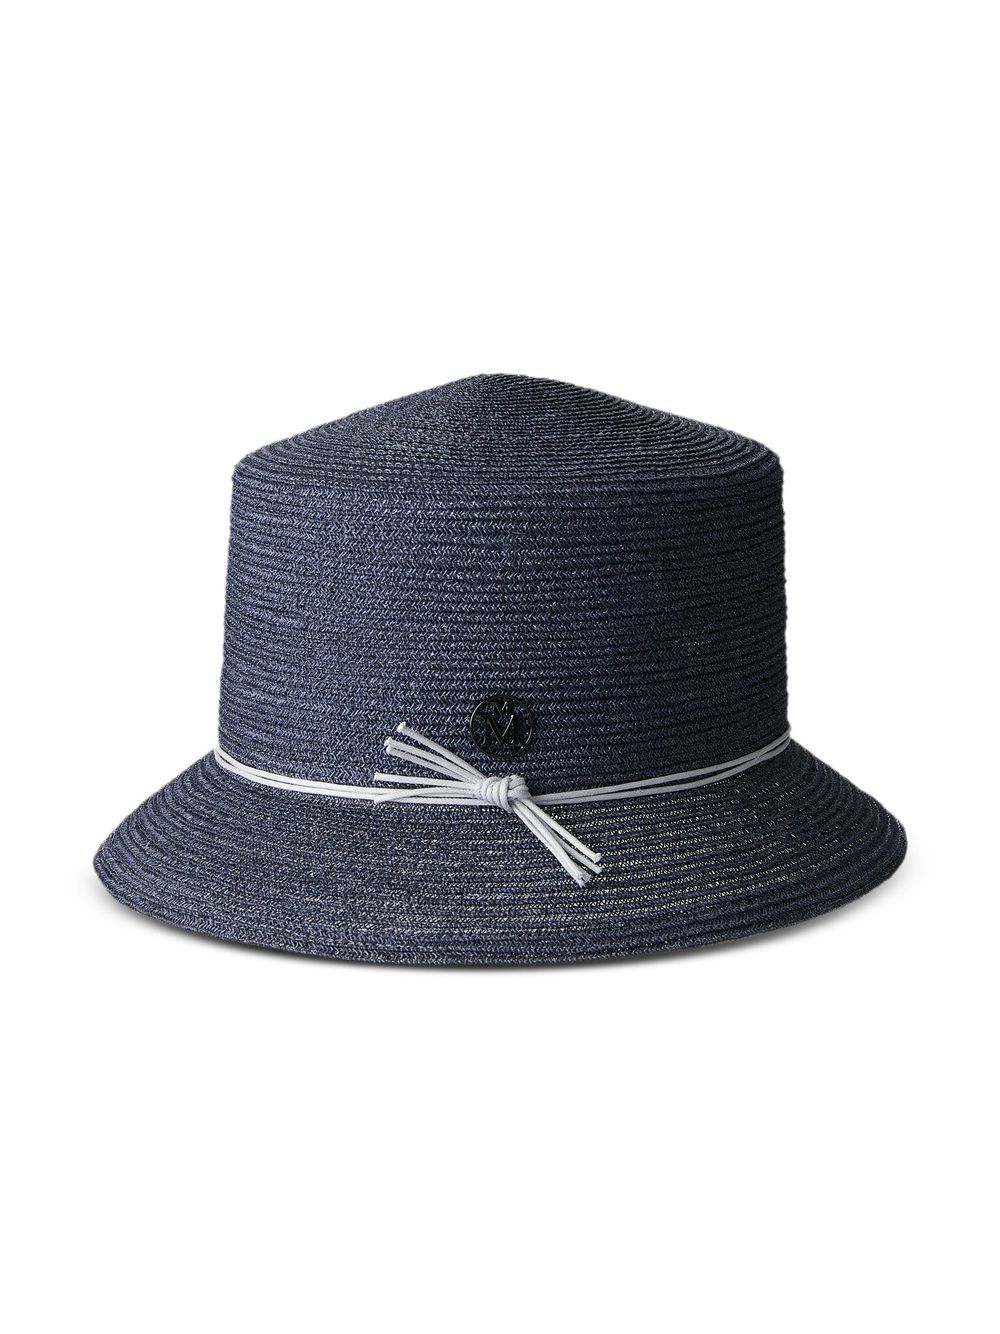 Maison Michel Arsene woven bucket hat - Blue von Maison Michel